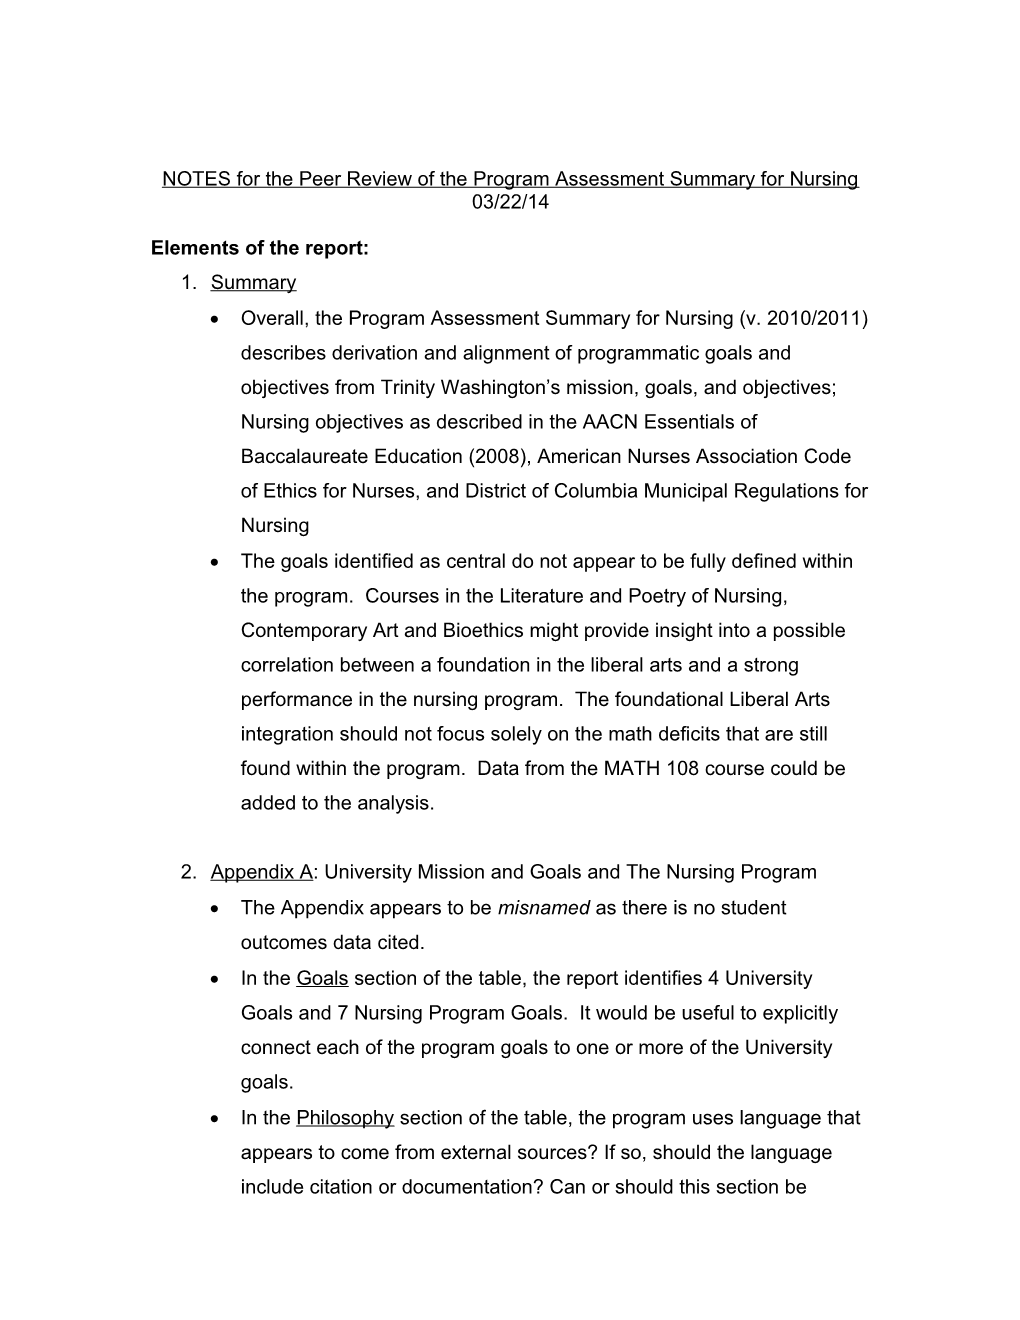 NOTES Re: Program Assessment Summary for Nursing